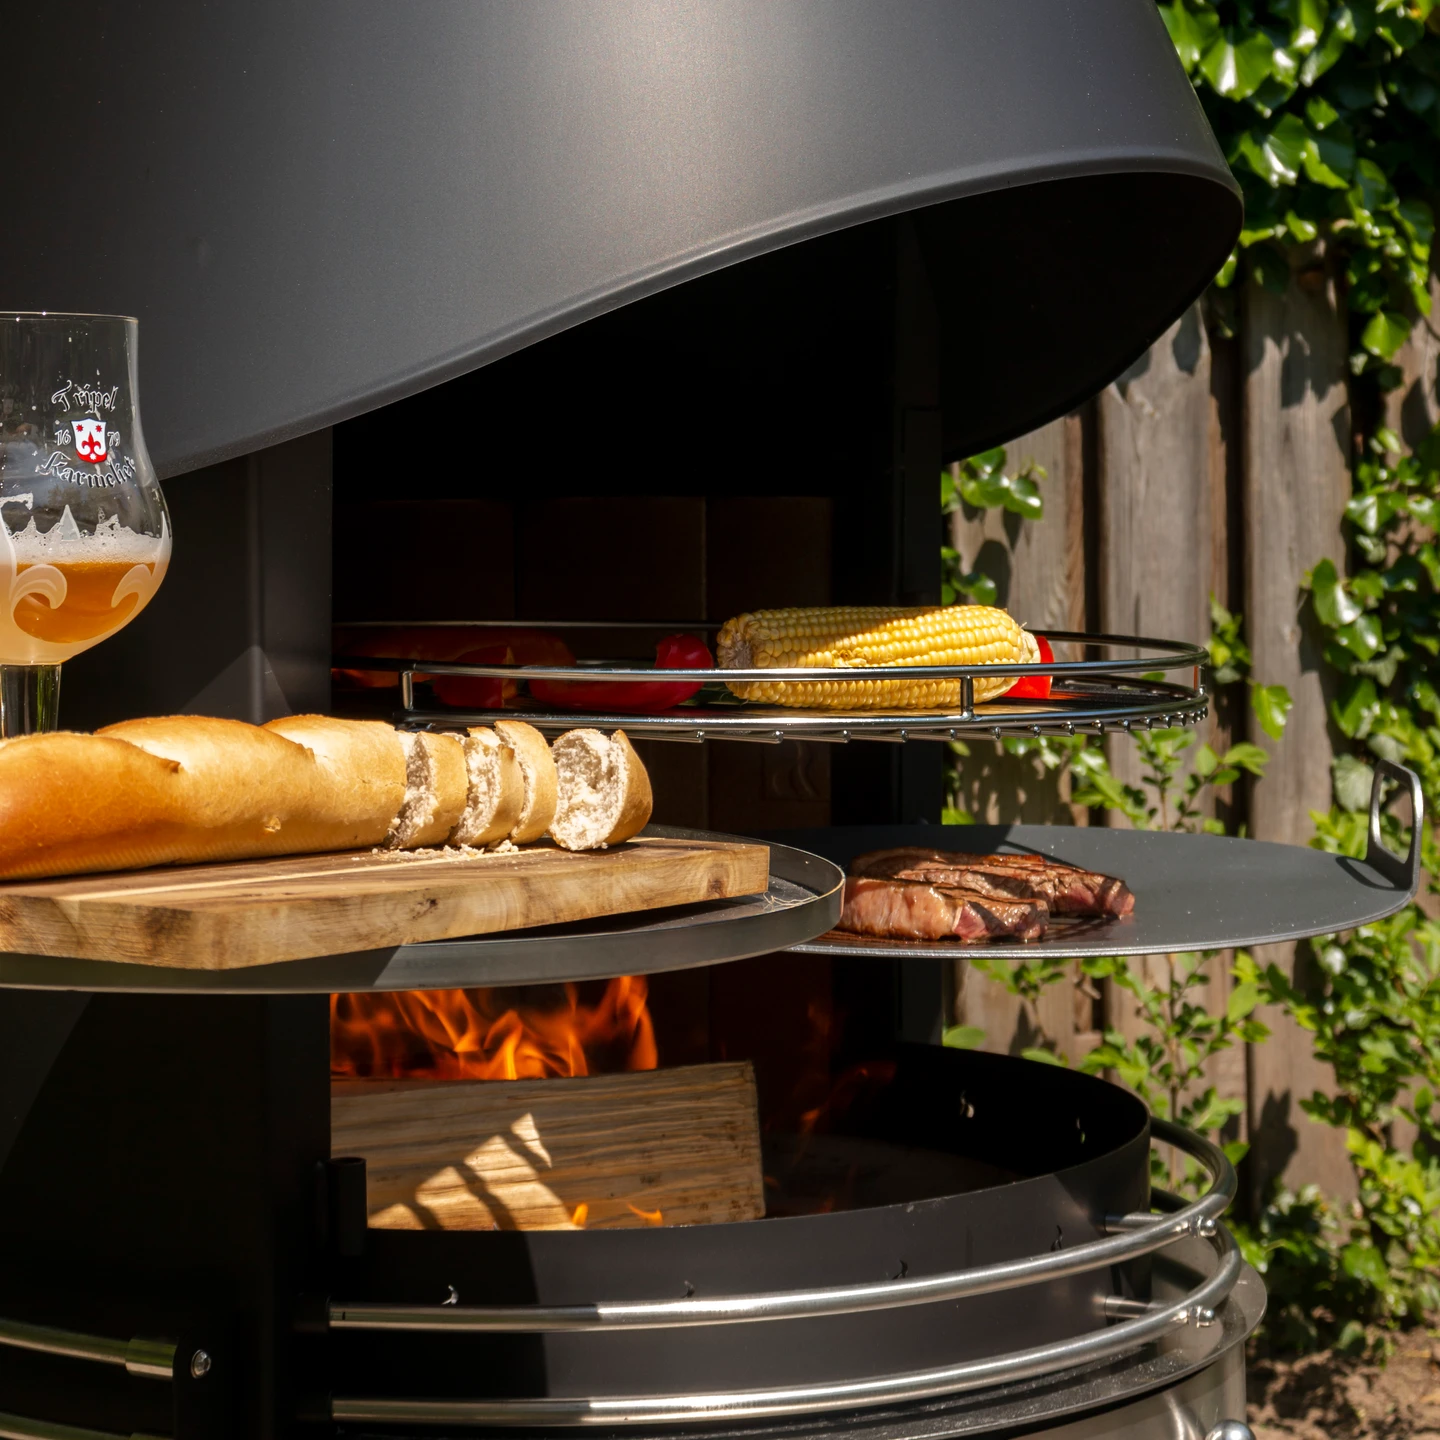 Girse Design RVS buitenhaard. Geschikt voor barbecue. Diverse mogelijkheden voor outdoorcooking.